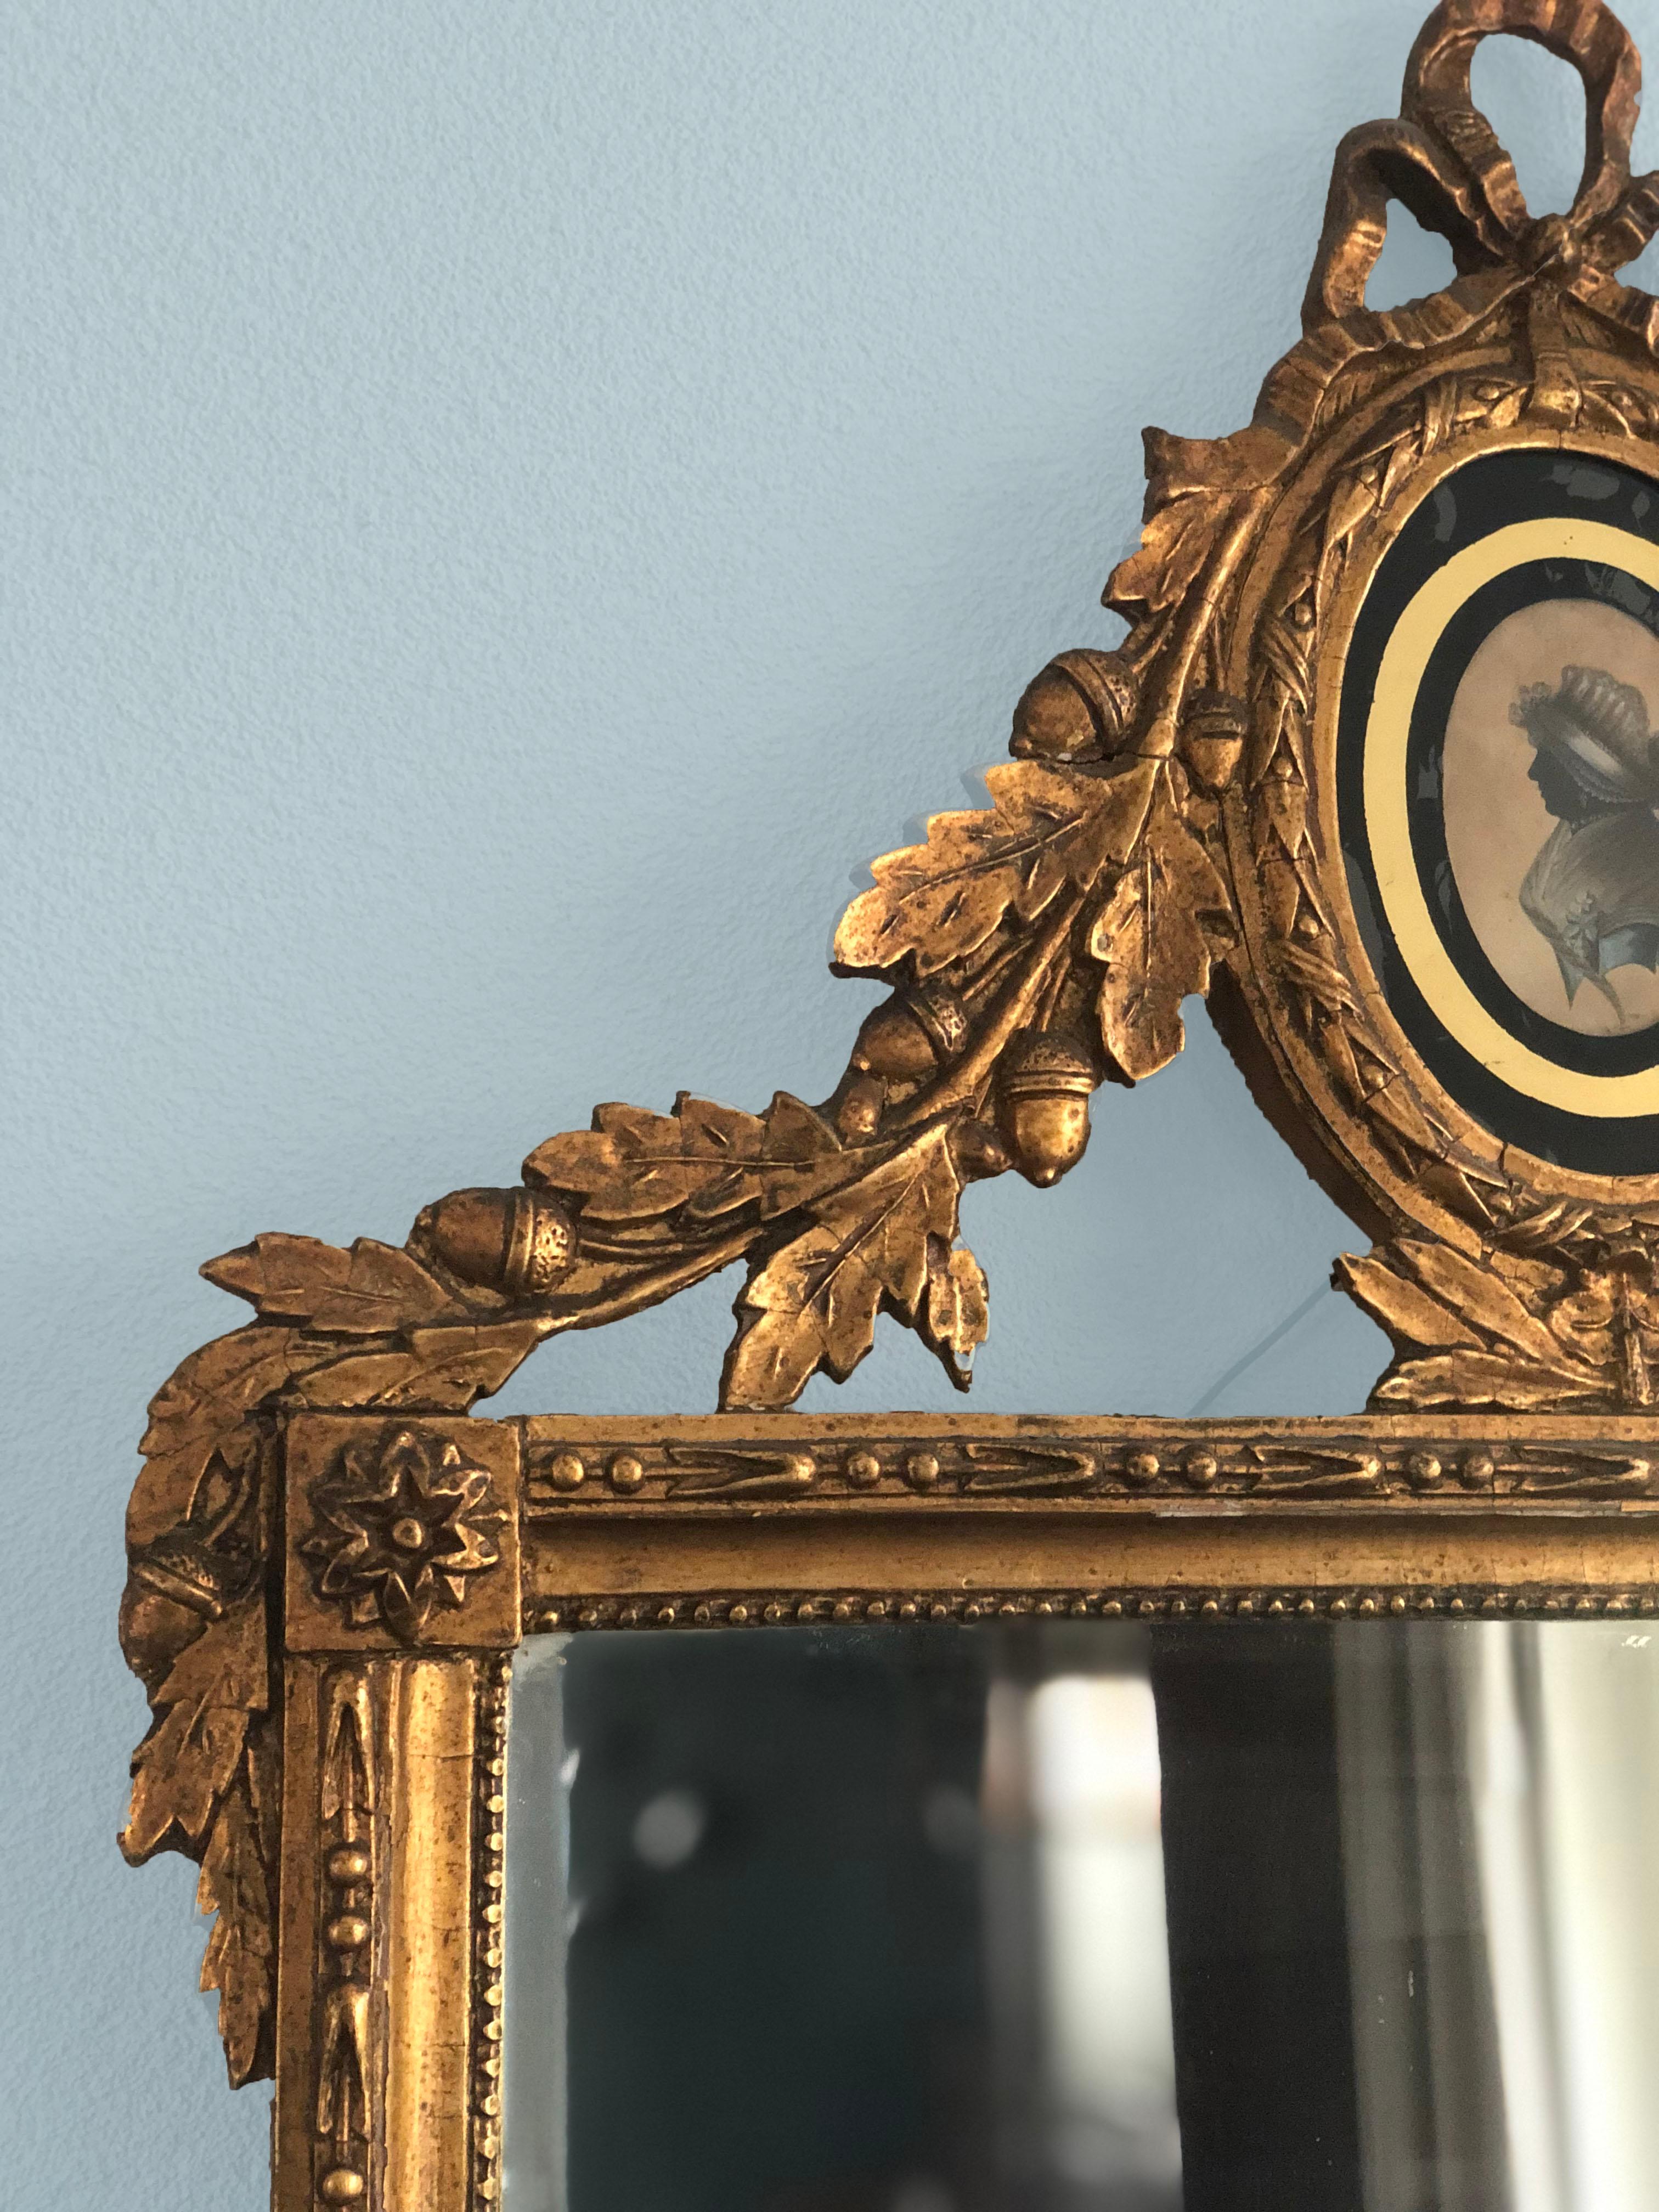 Miroir rectangulaire néerlandais Louis XVI en bois doré du XVIIIe siècle en très bon état. Le miroir a un cadre en bois de tilleul entouré d'un bord en perles avec une décoration de feuilles de laurier et de baies. Sur le dessus, il y a un médaillon